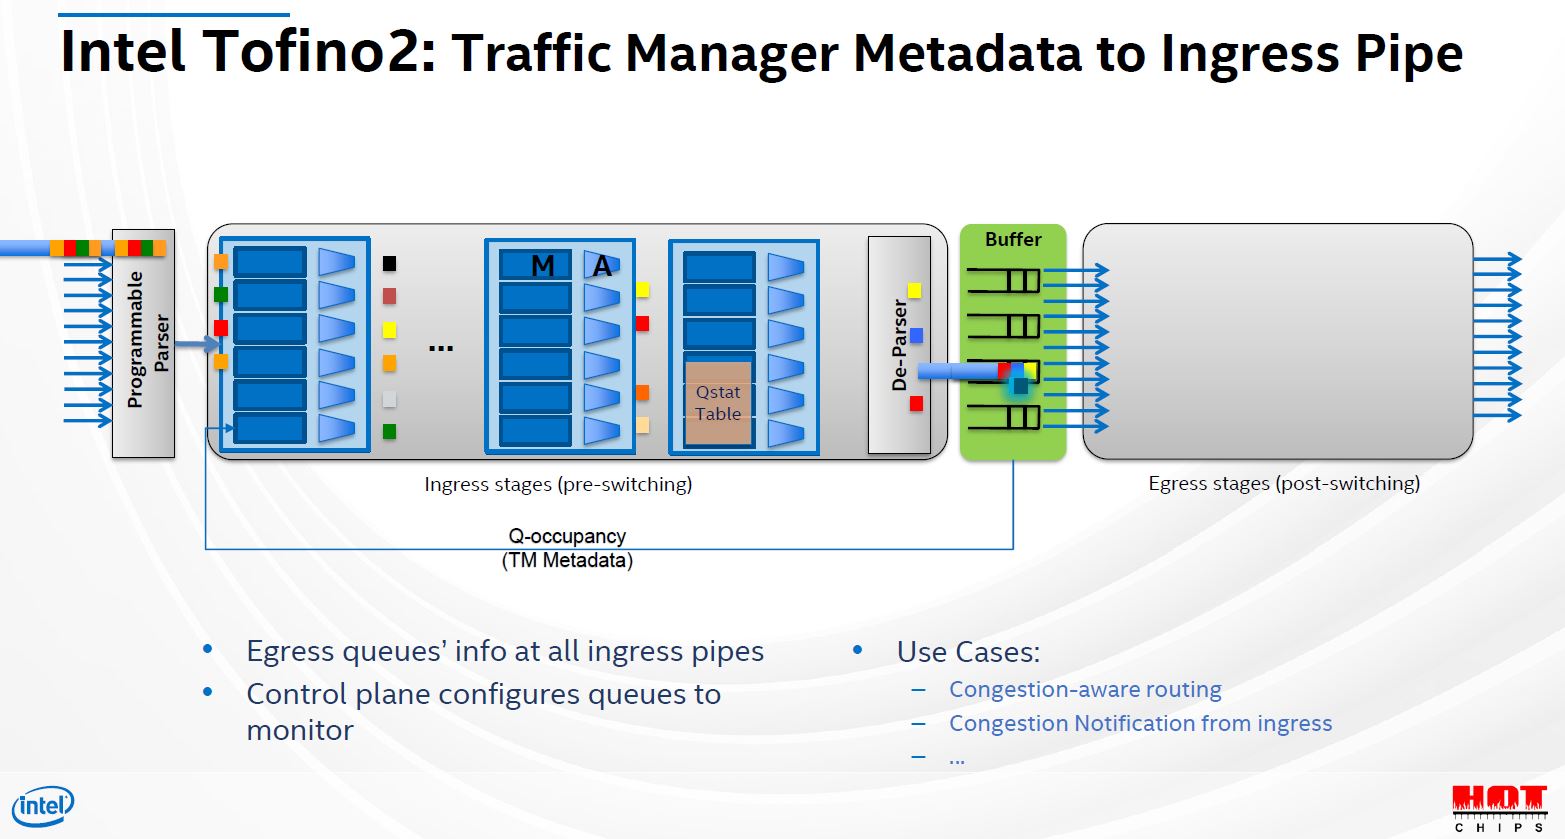 Hot Chips 32 Intel Tofino2 Traffic Manager Metadata To Ingress Pipe